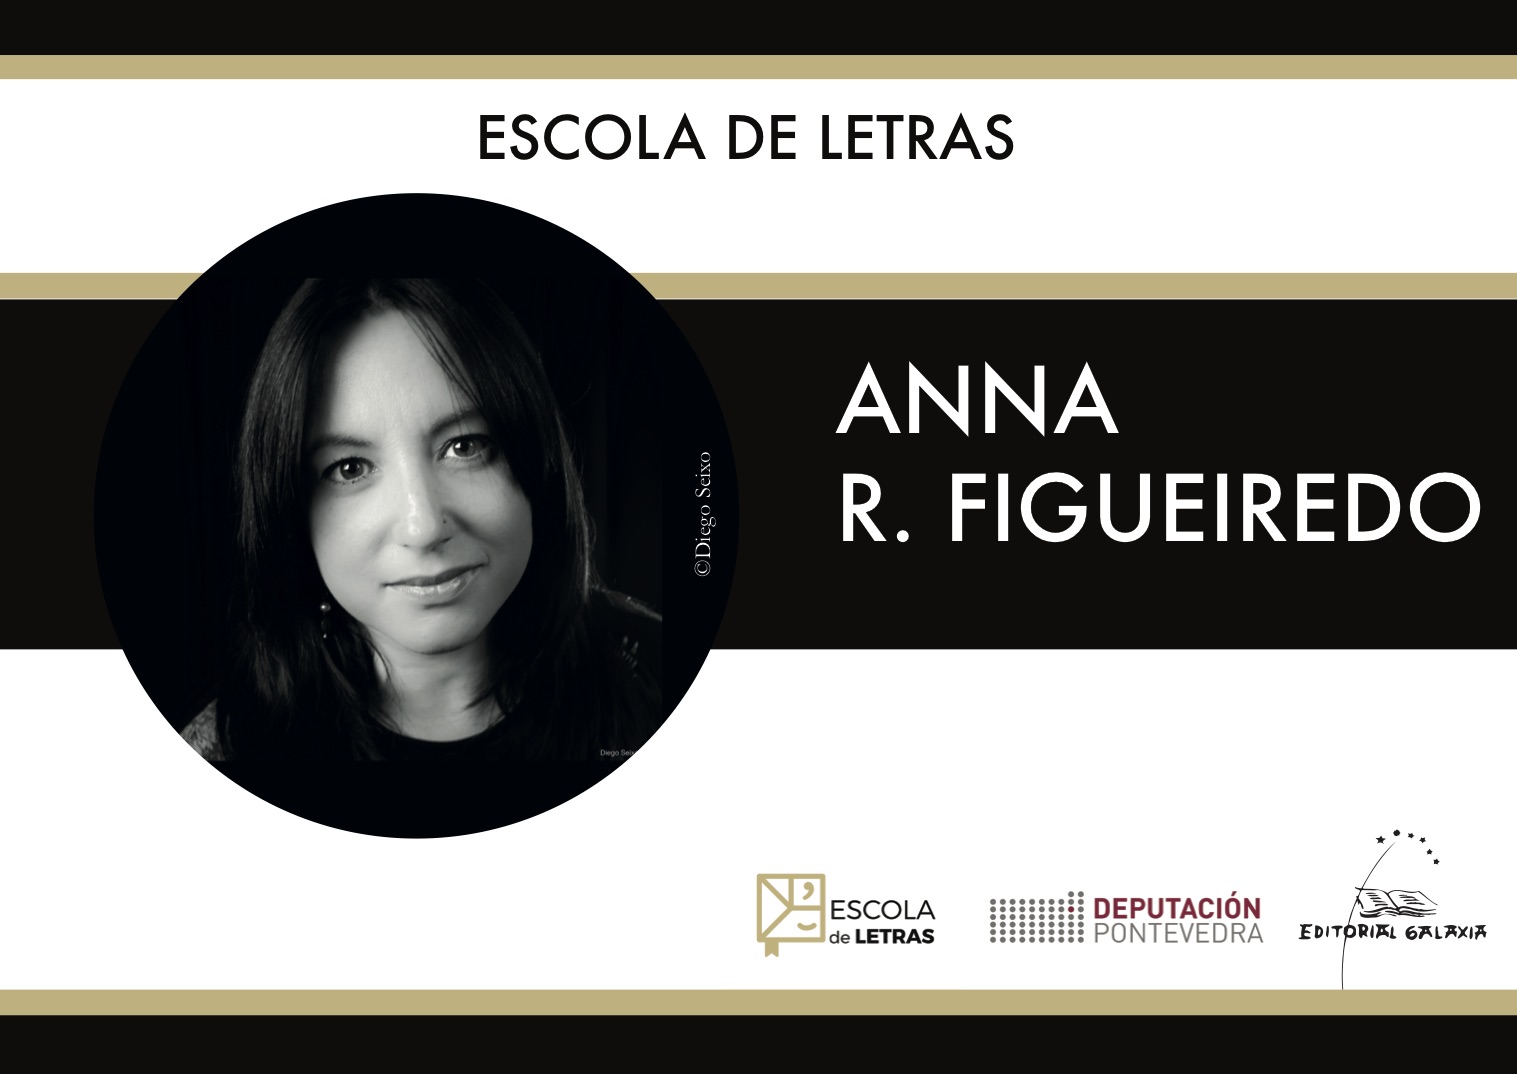 Anna Figueiredo